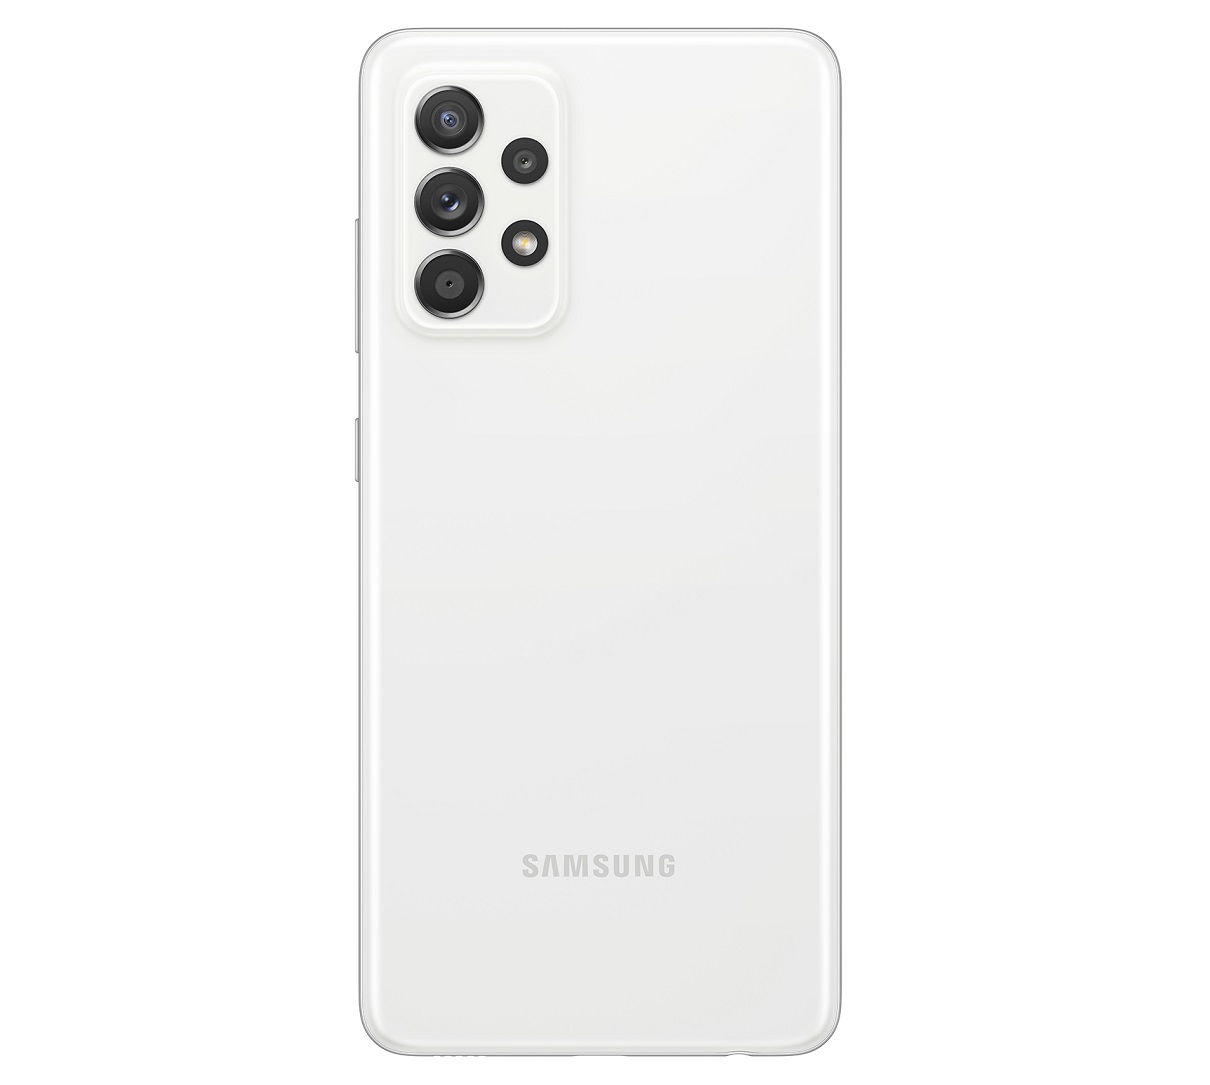 Анонс Samsung Galaxy A52 и Galaxy A52 5G: цена и характеристики